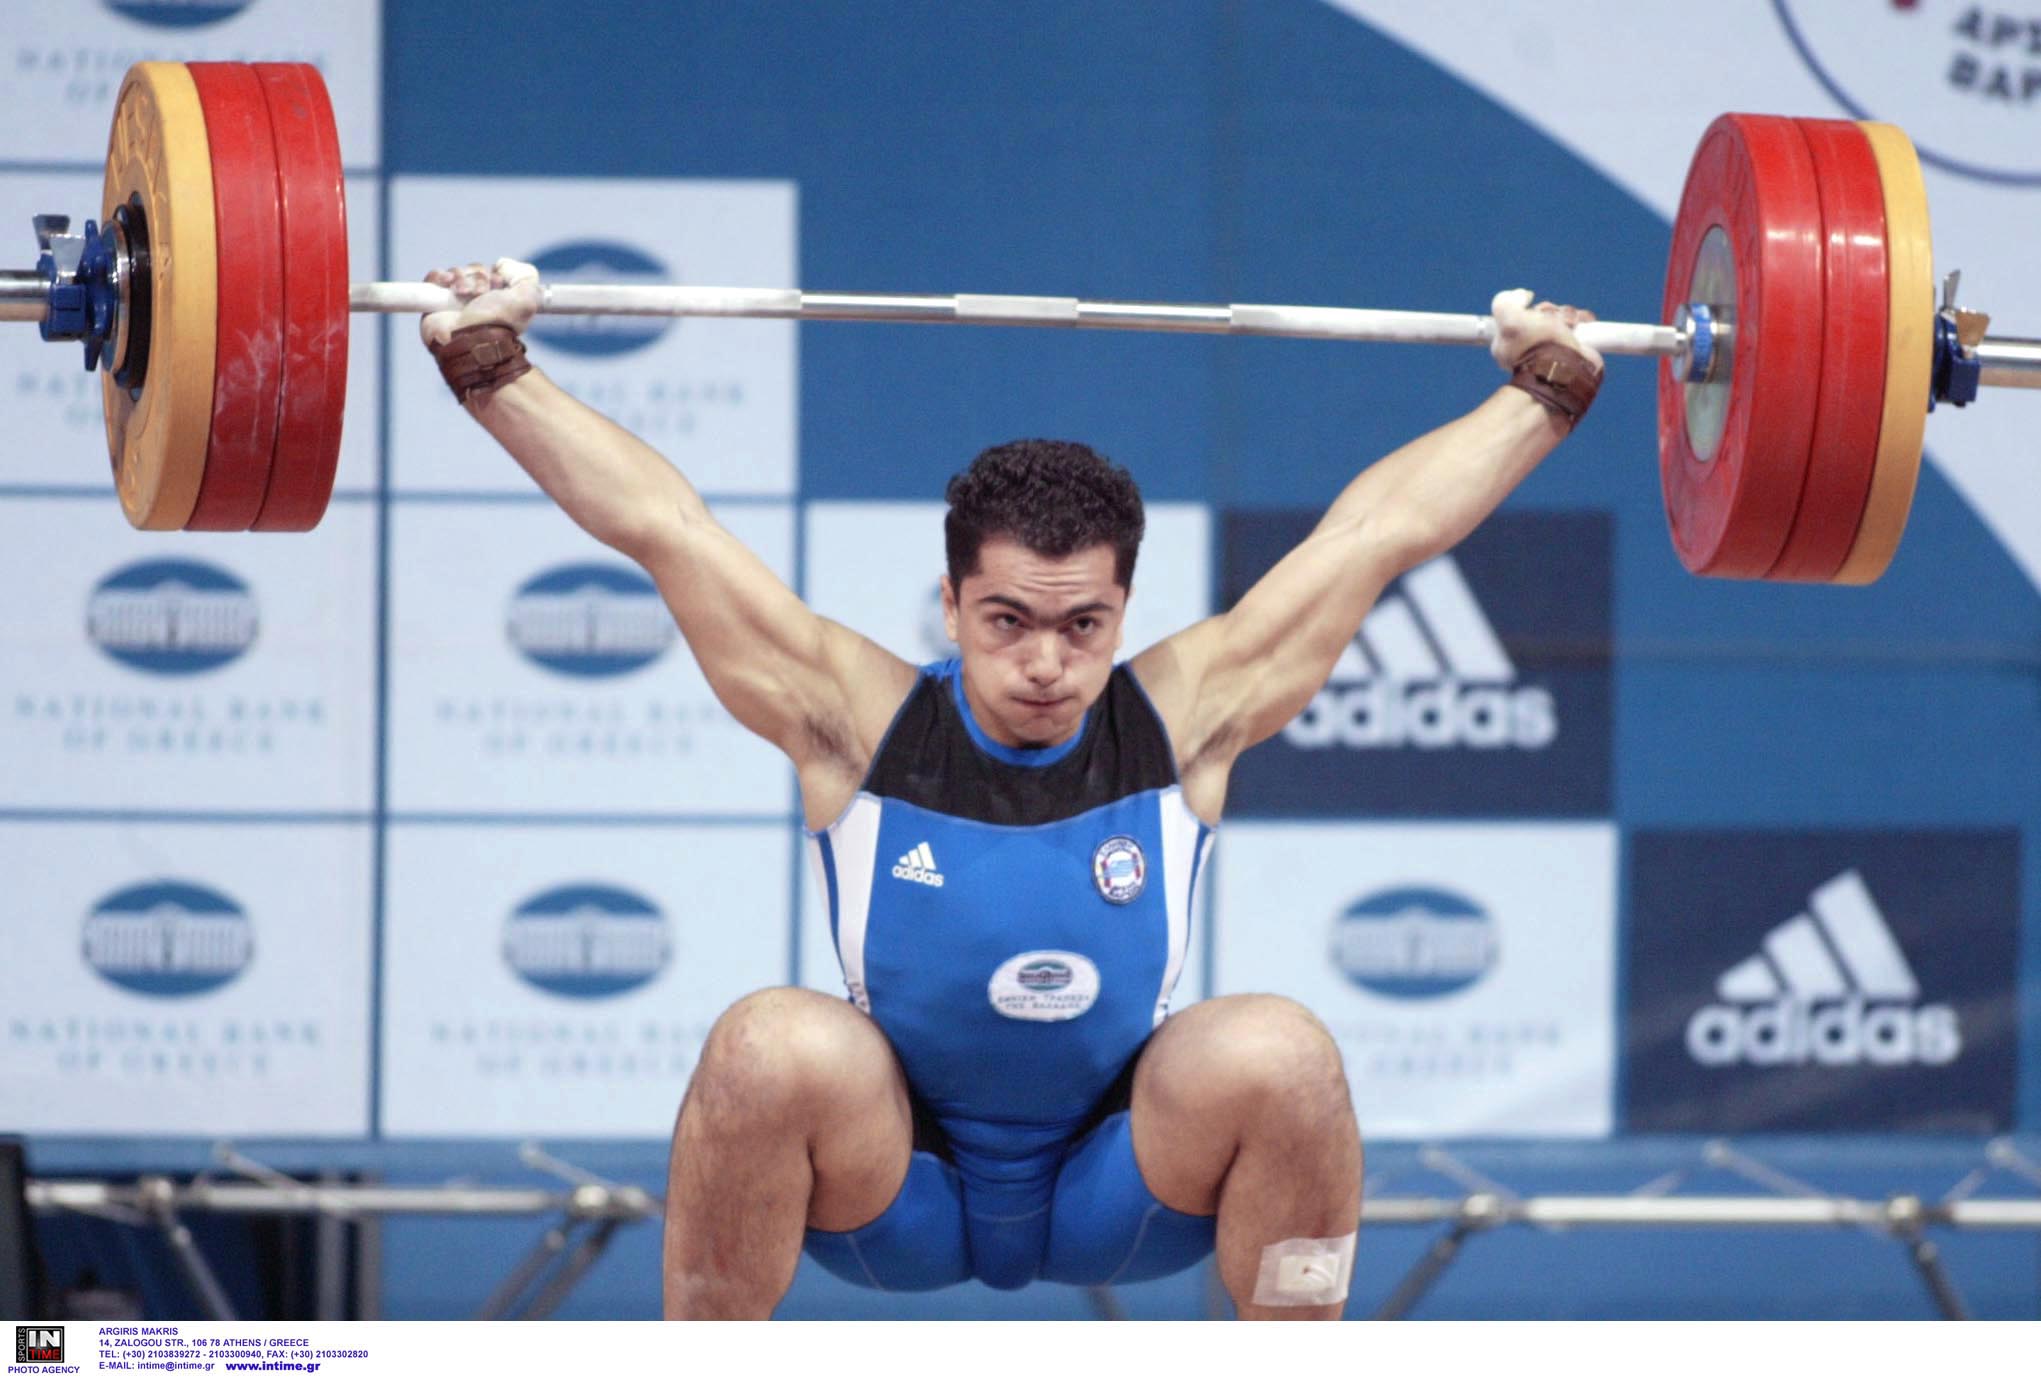 Γιώργος Μαρκούλας: Πιάστηκε ντοπέ ο Έλληνας Ολυμπιονίκης!